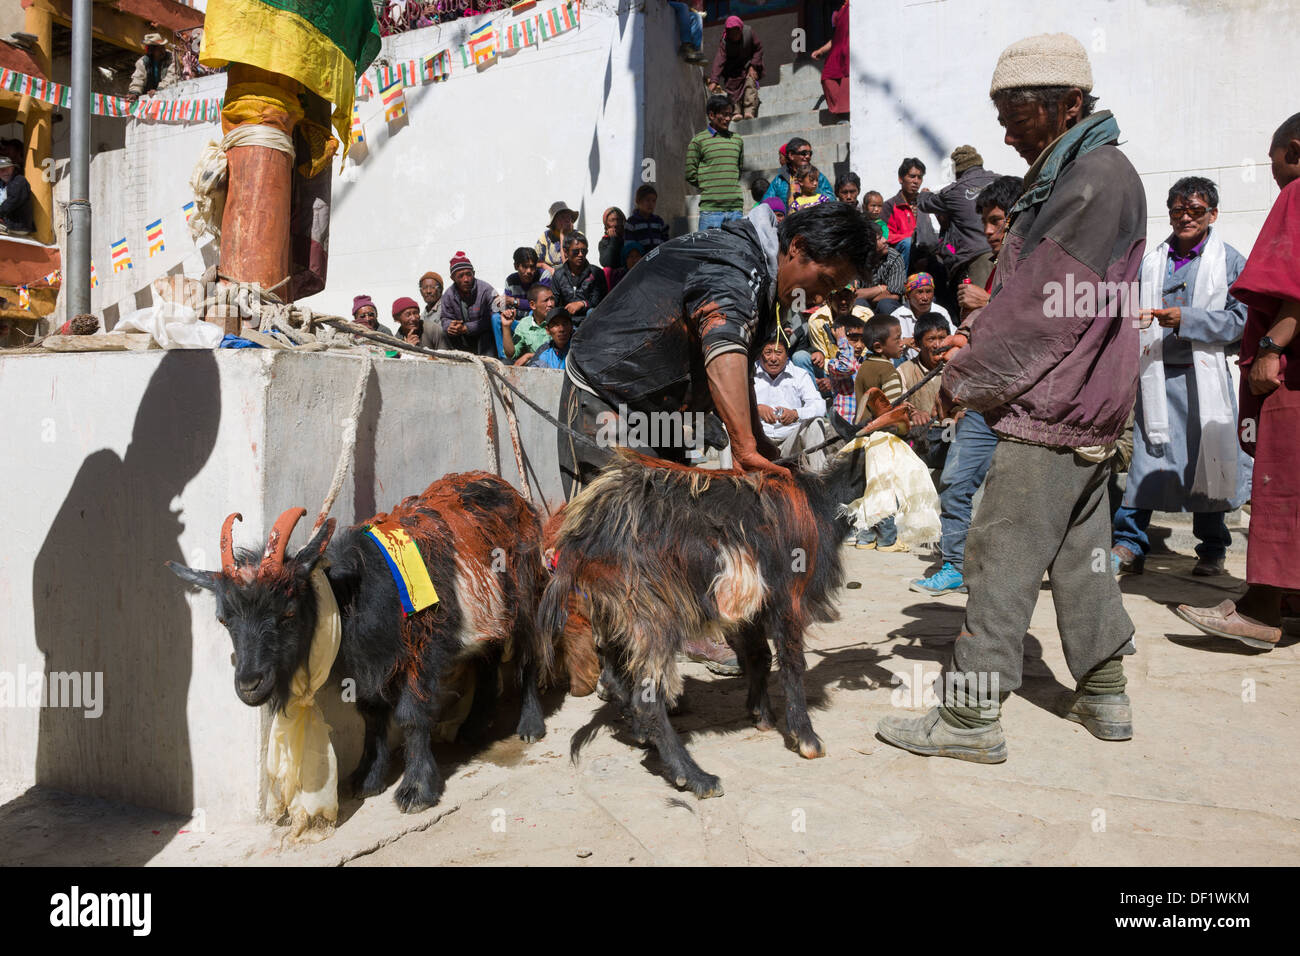 La préparation de chèvres pour sacrifice rituel et la libération, au cours de l'Korzok Tsomoriri Gustor festival, Lake, (Ladakh) Jammu-et-Cachemire, l'Inde Banque D'Images